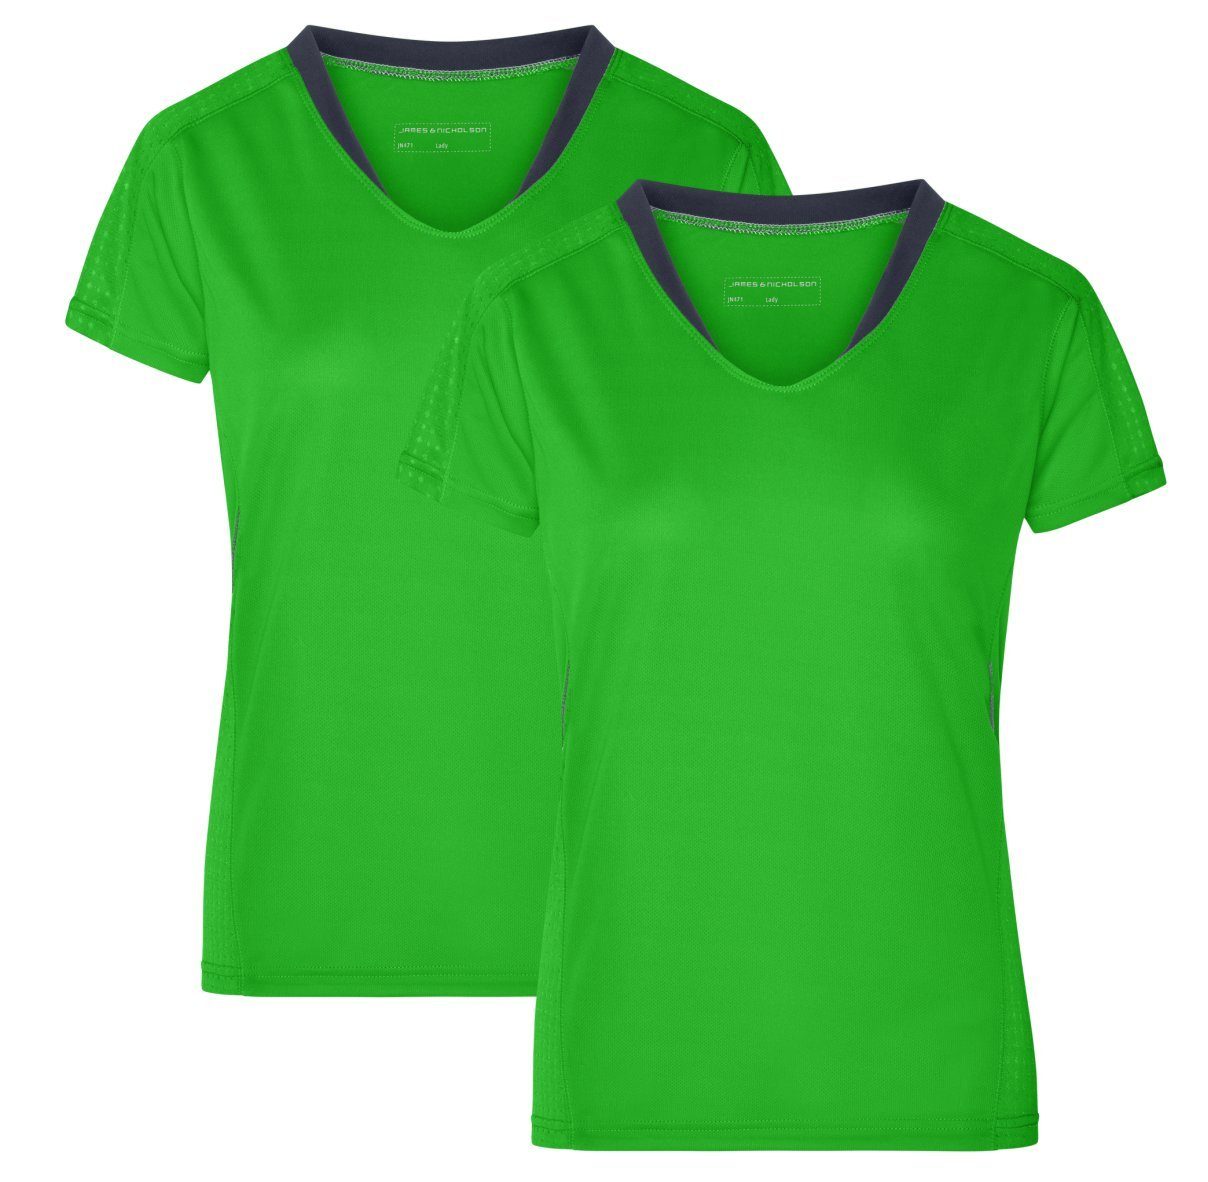 James & Nicholson Laufshirt Doppelpack Damen Kurzarm Laufshirt Running T-Shirt JN471 (Doppelpack, 2 Stück) Atmungsaktiv und Feuchtigkeitsregulierend green/iron-grey